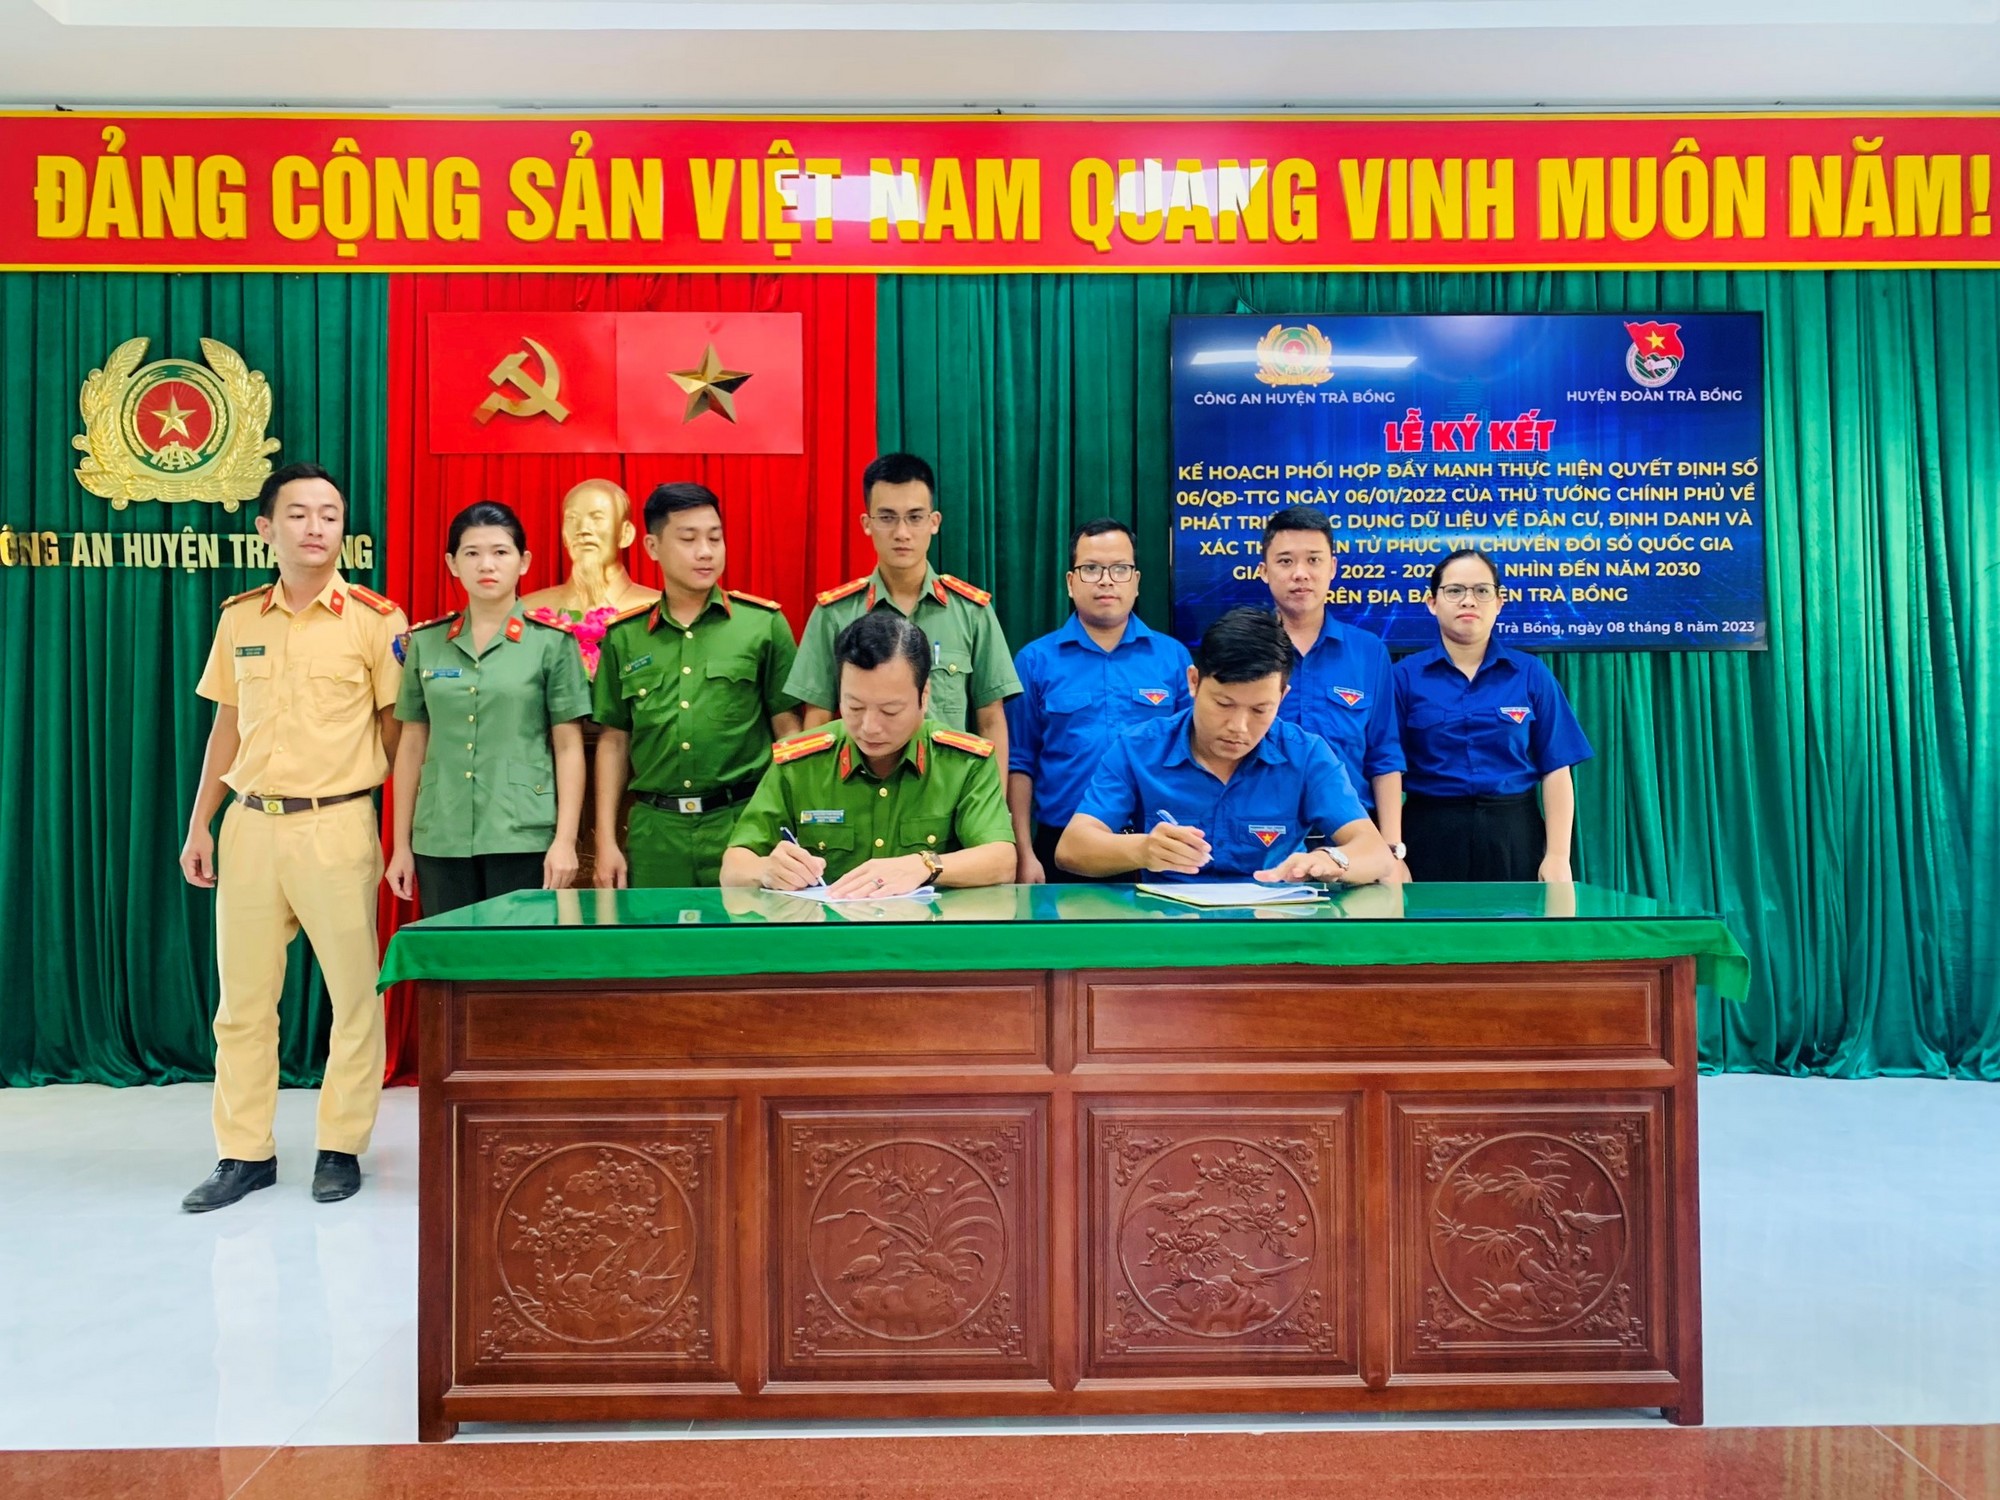 Huyện đoàn phối hợp Công an huyện Trà Bồng tổ chức ký kết Kế hoạch phối hợp về đẩy mạnh thực hiện Quyết định số 06/QĐ-TTg ngày 06/01/2022 của Thủ tướng Chính phủ và phát động phong trào “Tôi và bạn có Ví điện tử VNeID”.